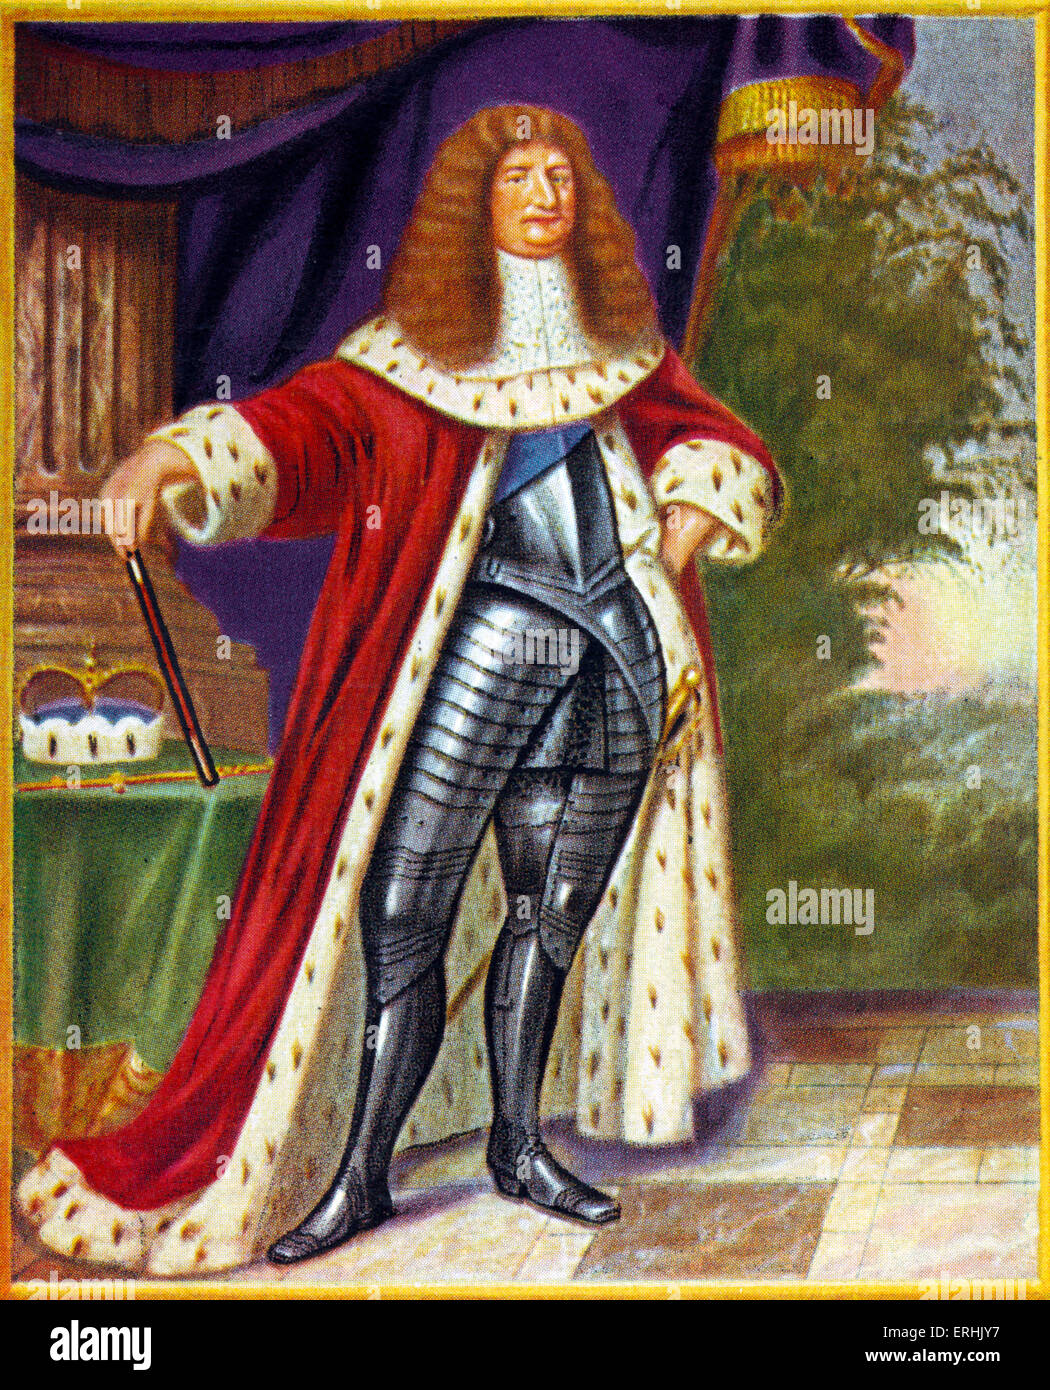 Friedrich Wilhelm (Friedrich Wilhelm). Porträt des Kurfürsten von Brandenburg und Herzog von Preußen. 16. Februar 1620 - 29 April Stockfoto